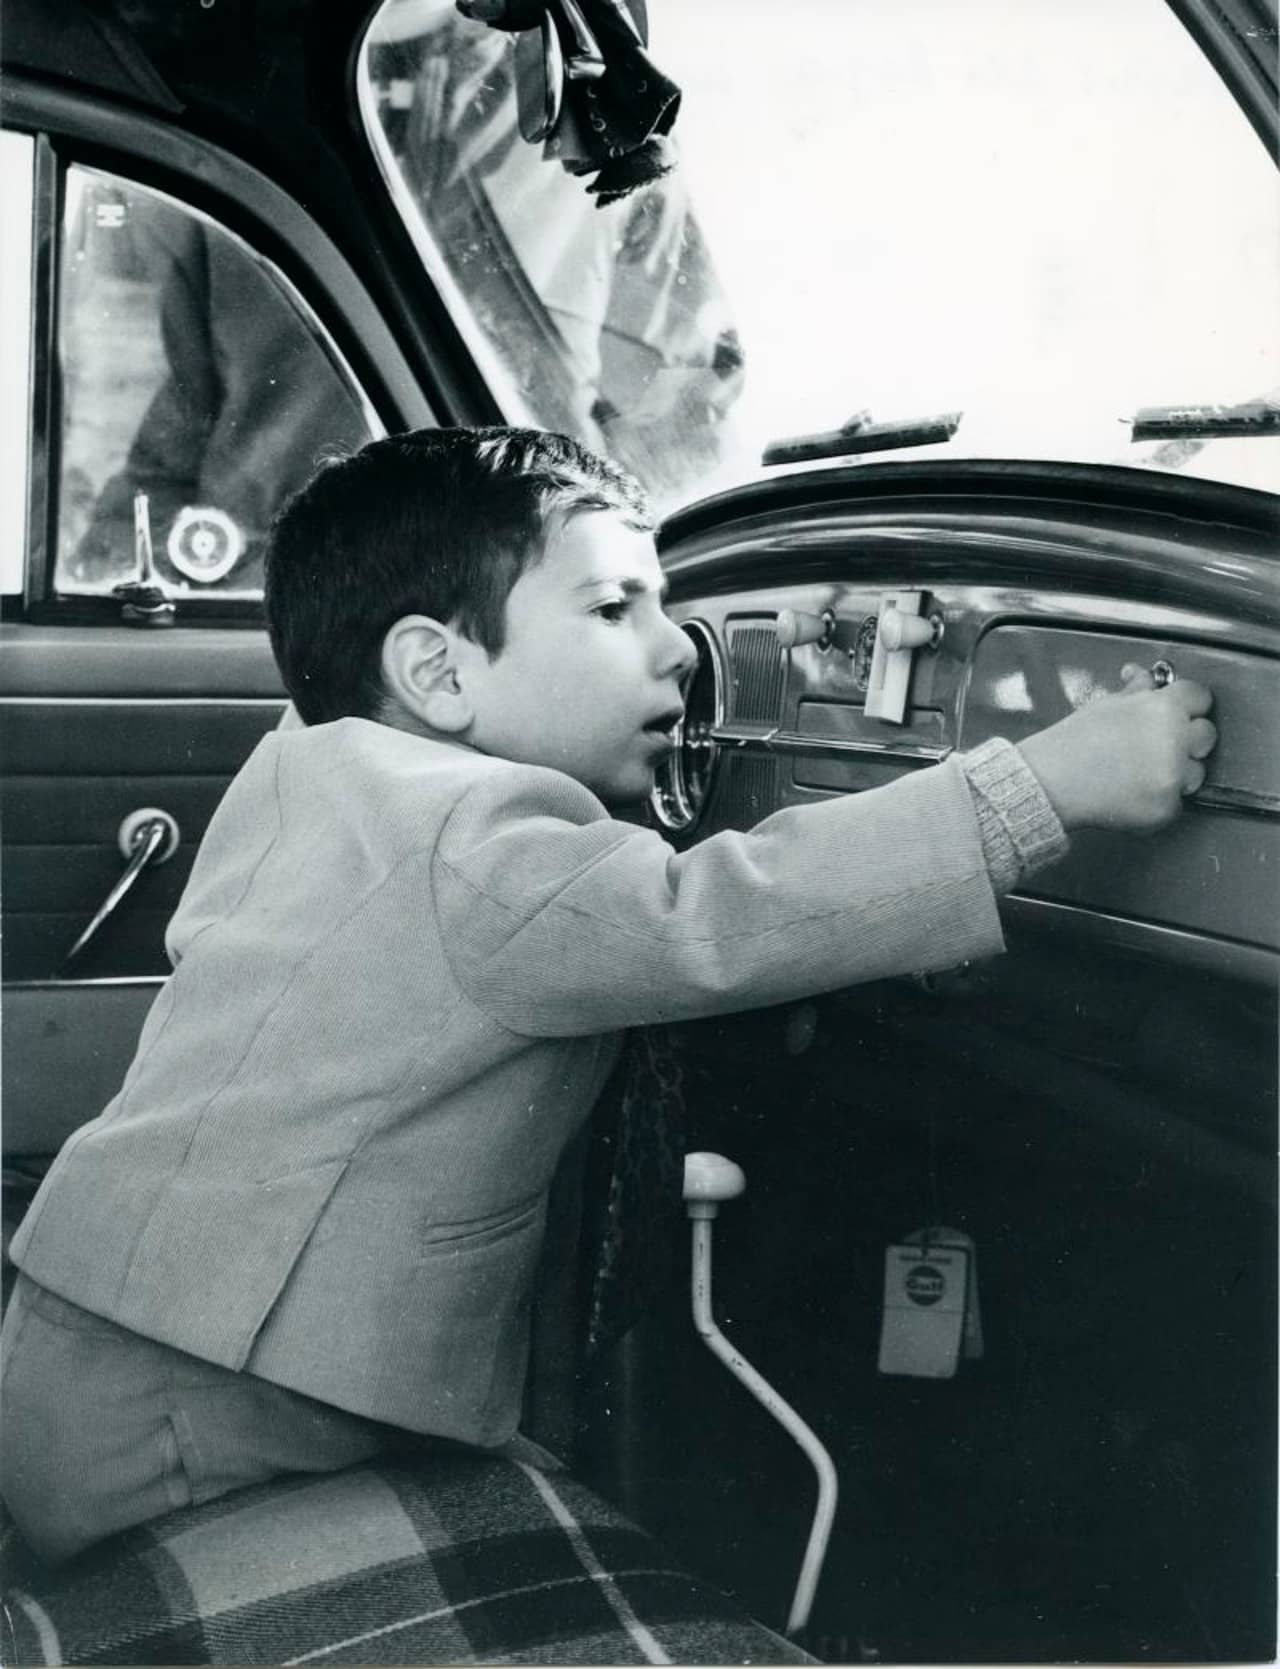 Ali Reza, Sohn des persischen Schahs Reza Pahlevi, sitzt in einem Auto und berührt das Armaturenbrett.